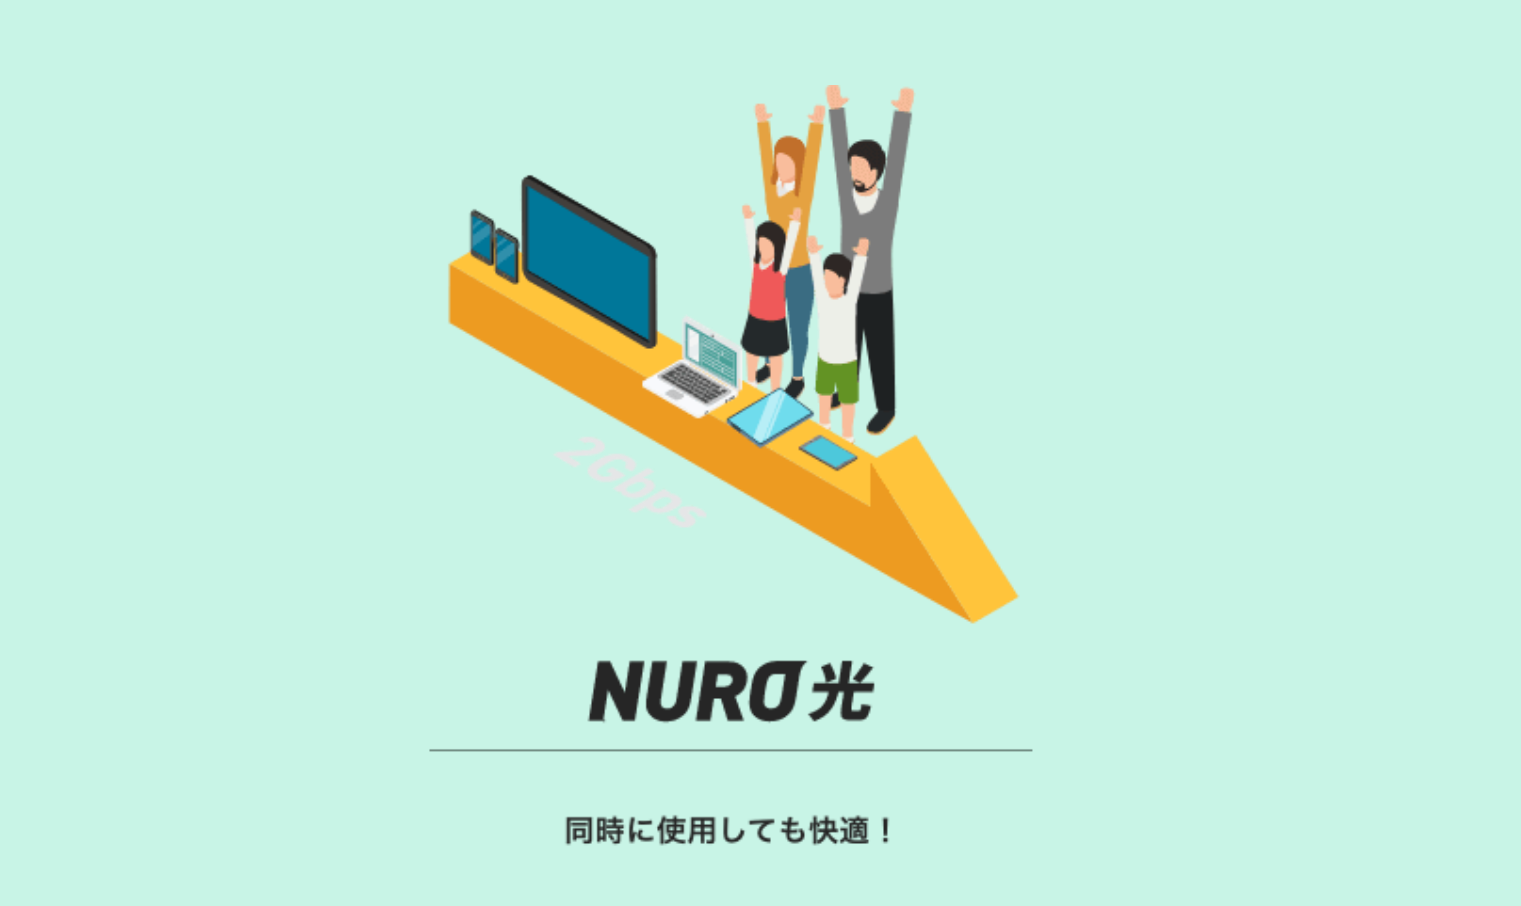 NURO光のキャンペーンは45,000円キャッシュバックがおすすめ！